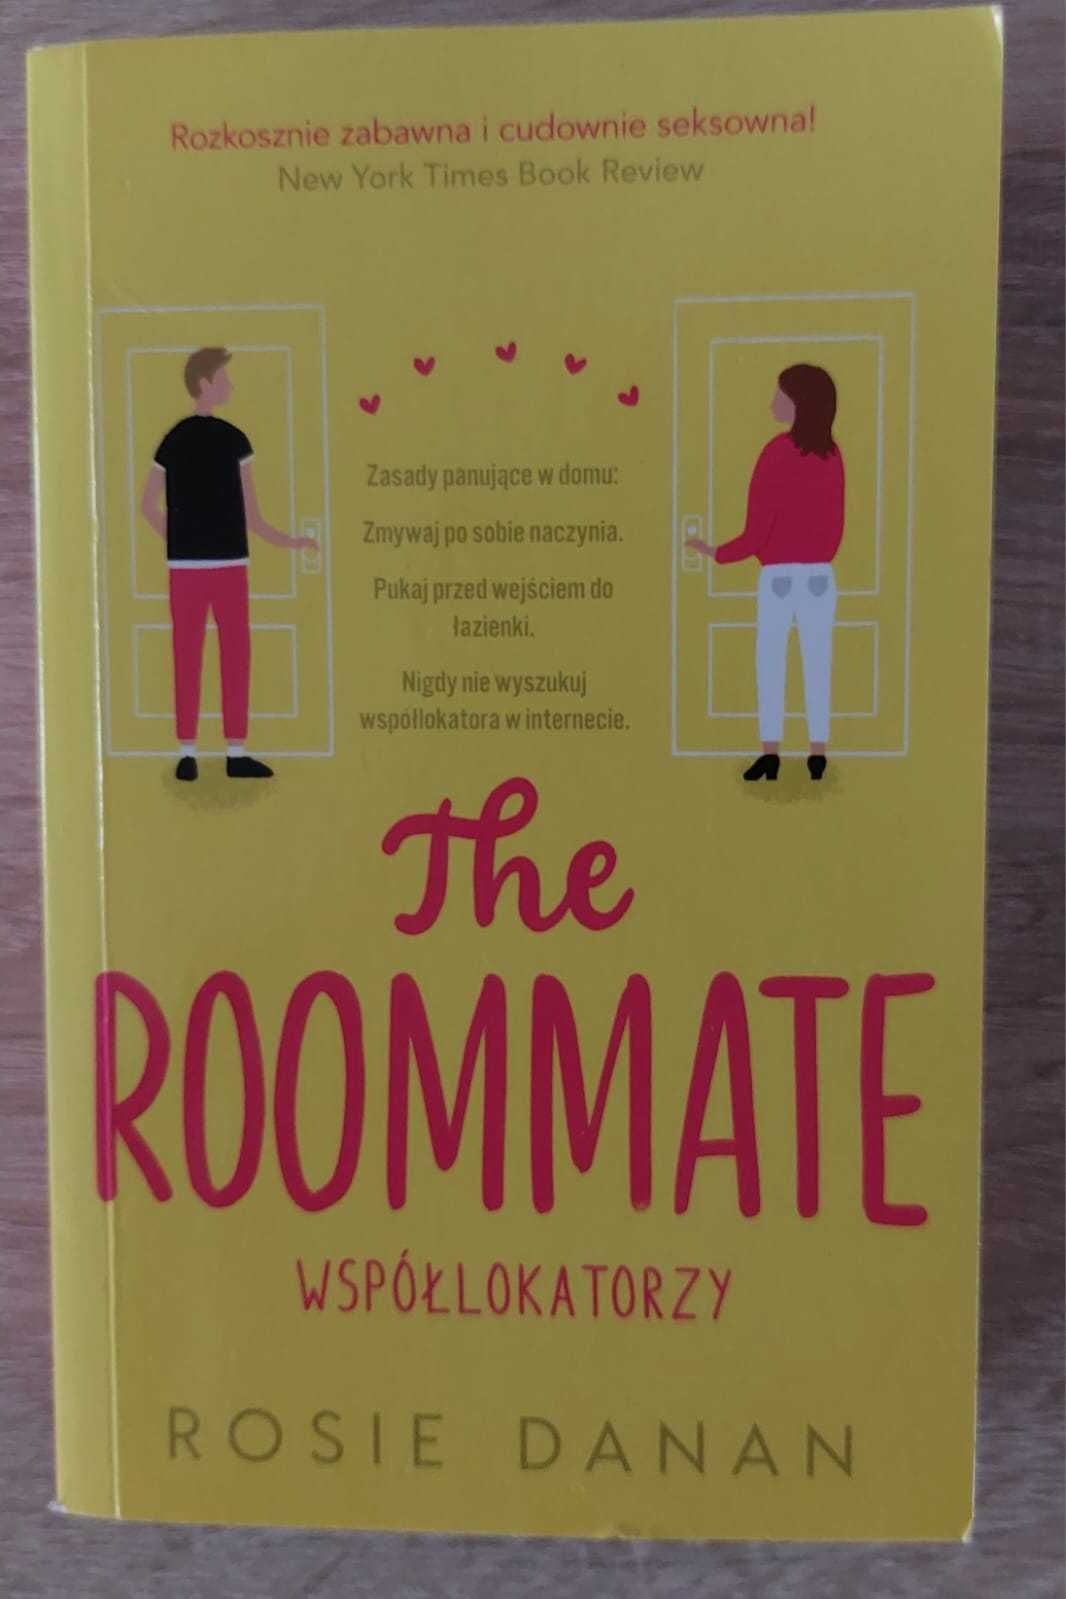 Książka ,,The roommate"